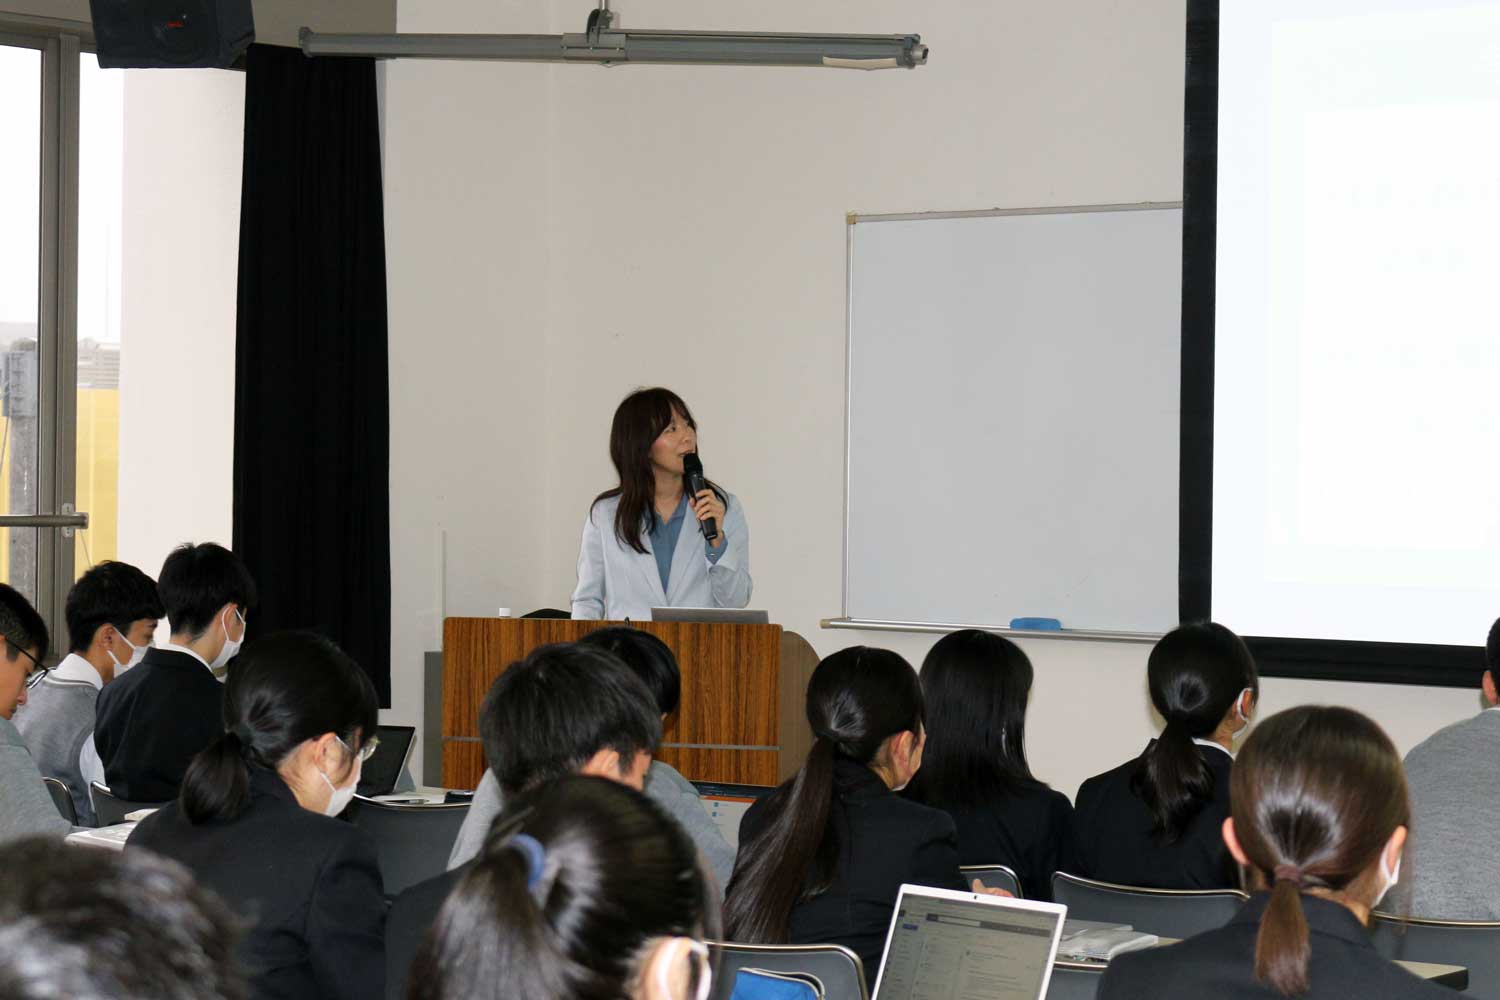 「グローバル人材育成教育」の協働機関として講義を行いました